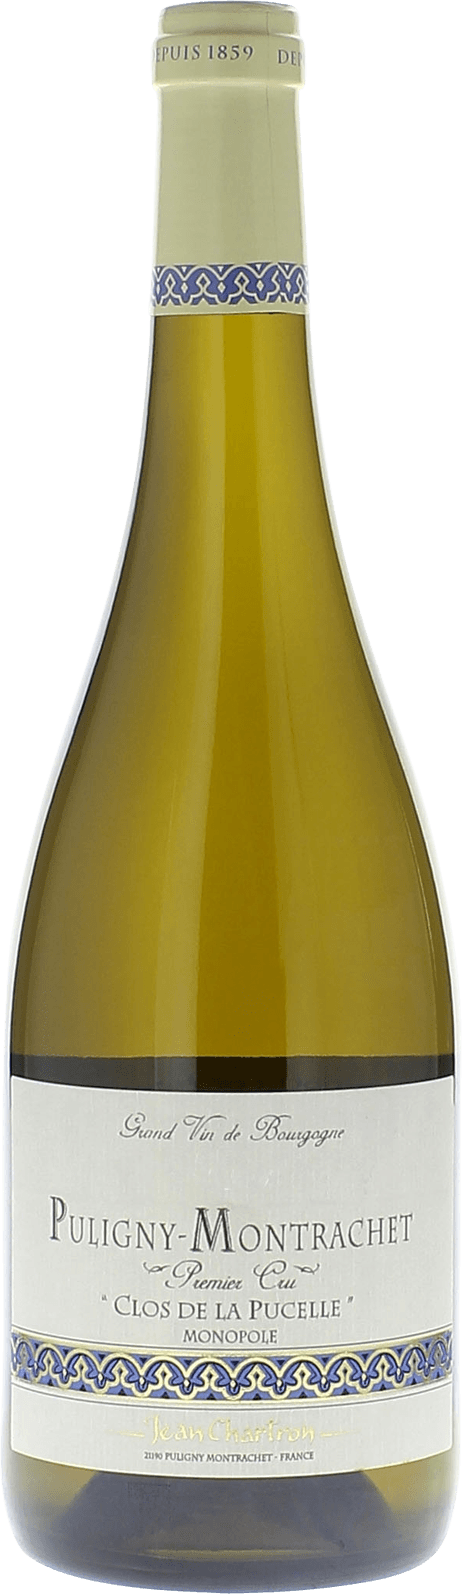 Puligny montrachet 1er cru clos de la pucelle 2018 Domaine CHARTRON Jean, Bourgogne blanc